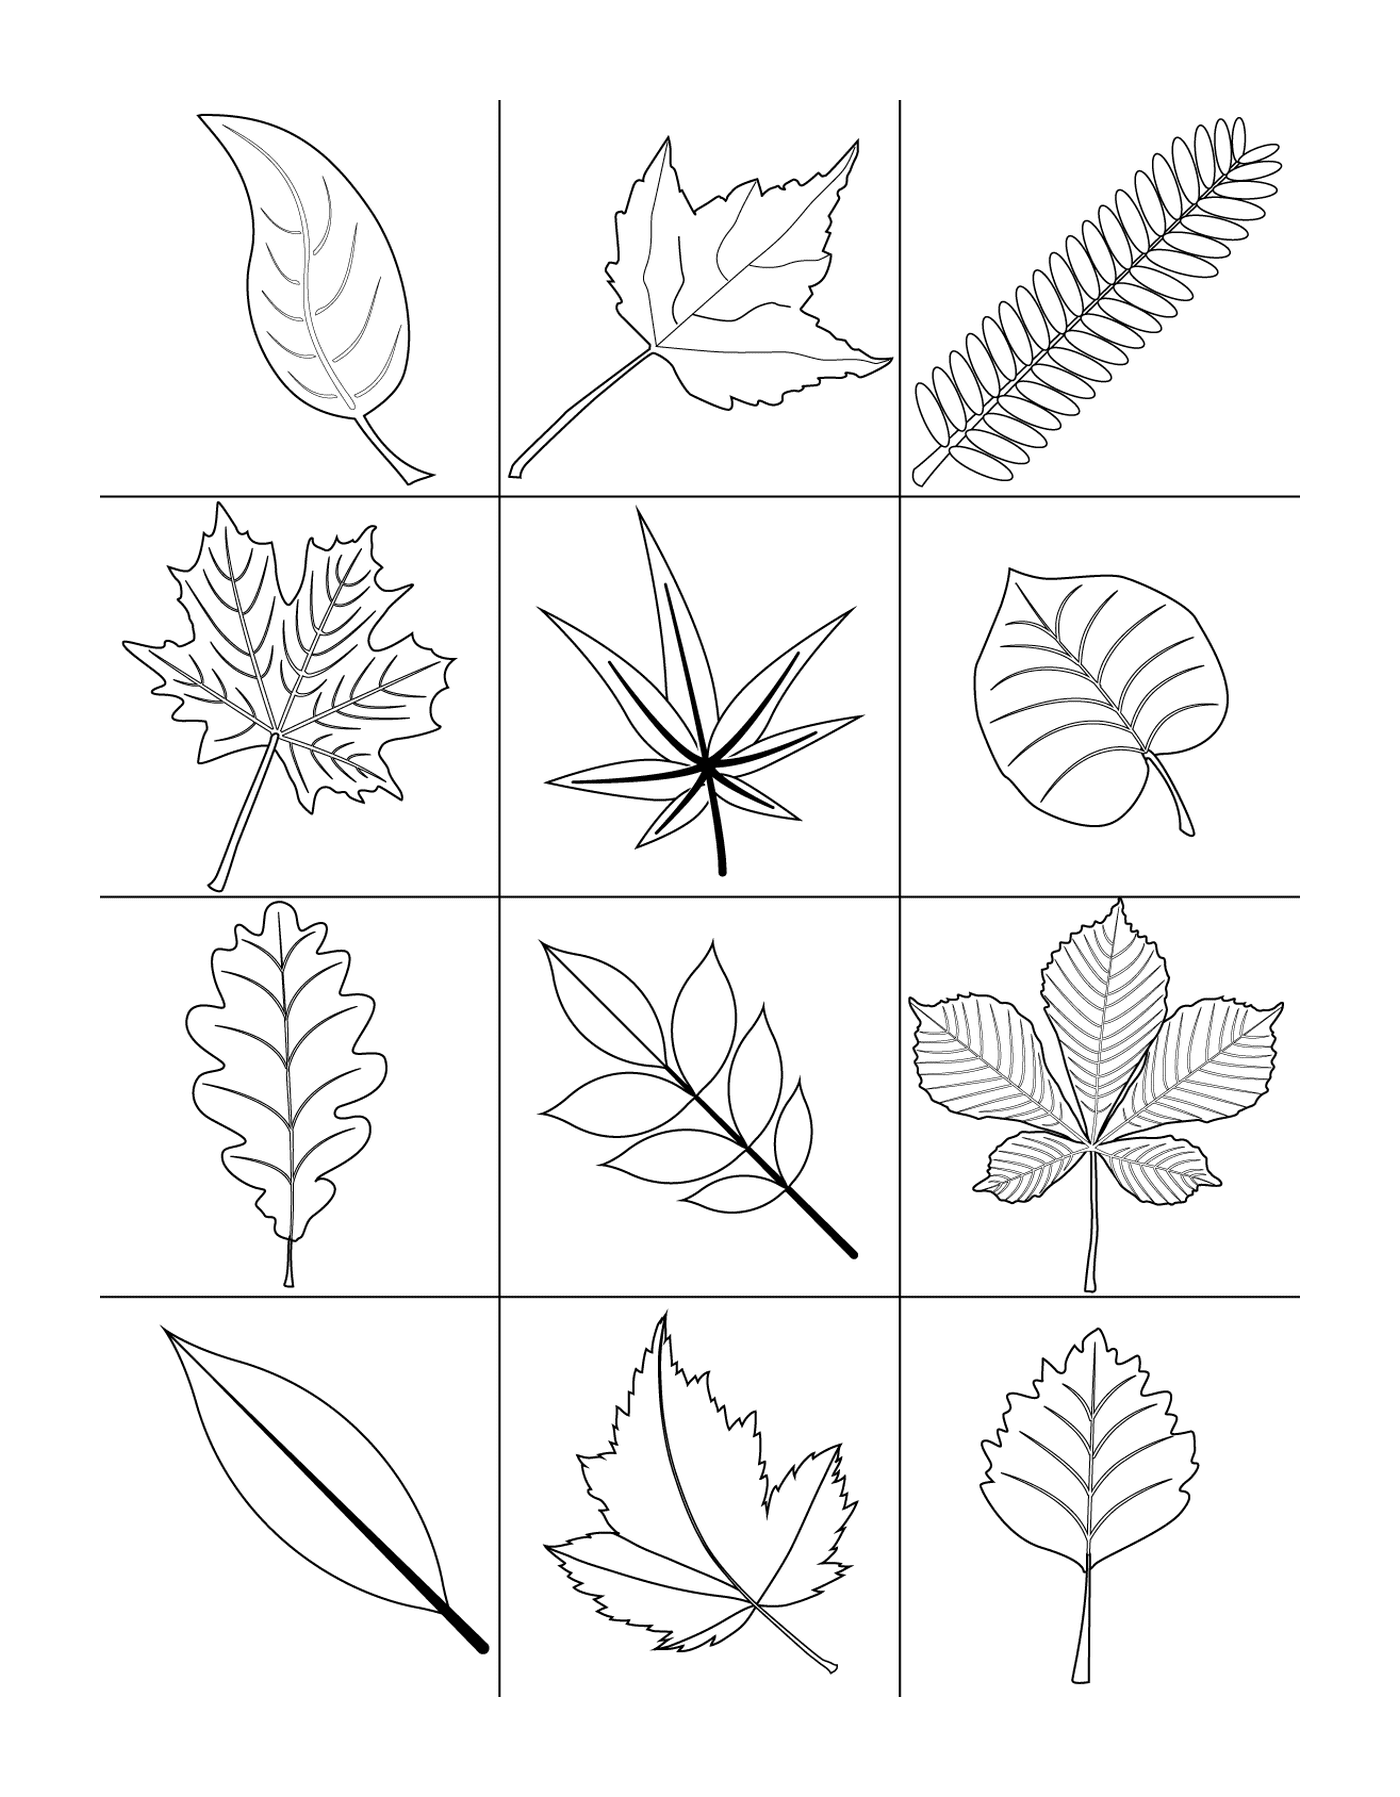   Ensemble de 12 feuilles différentes dessinées 